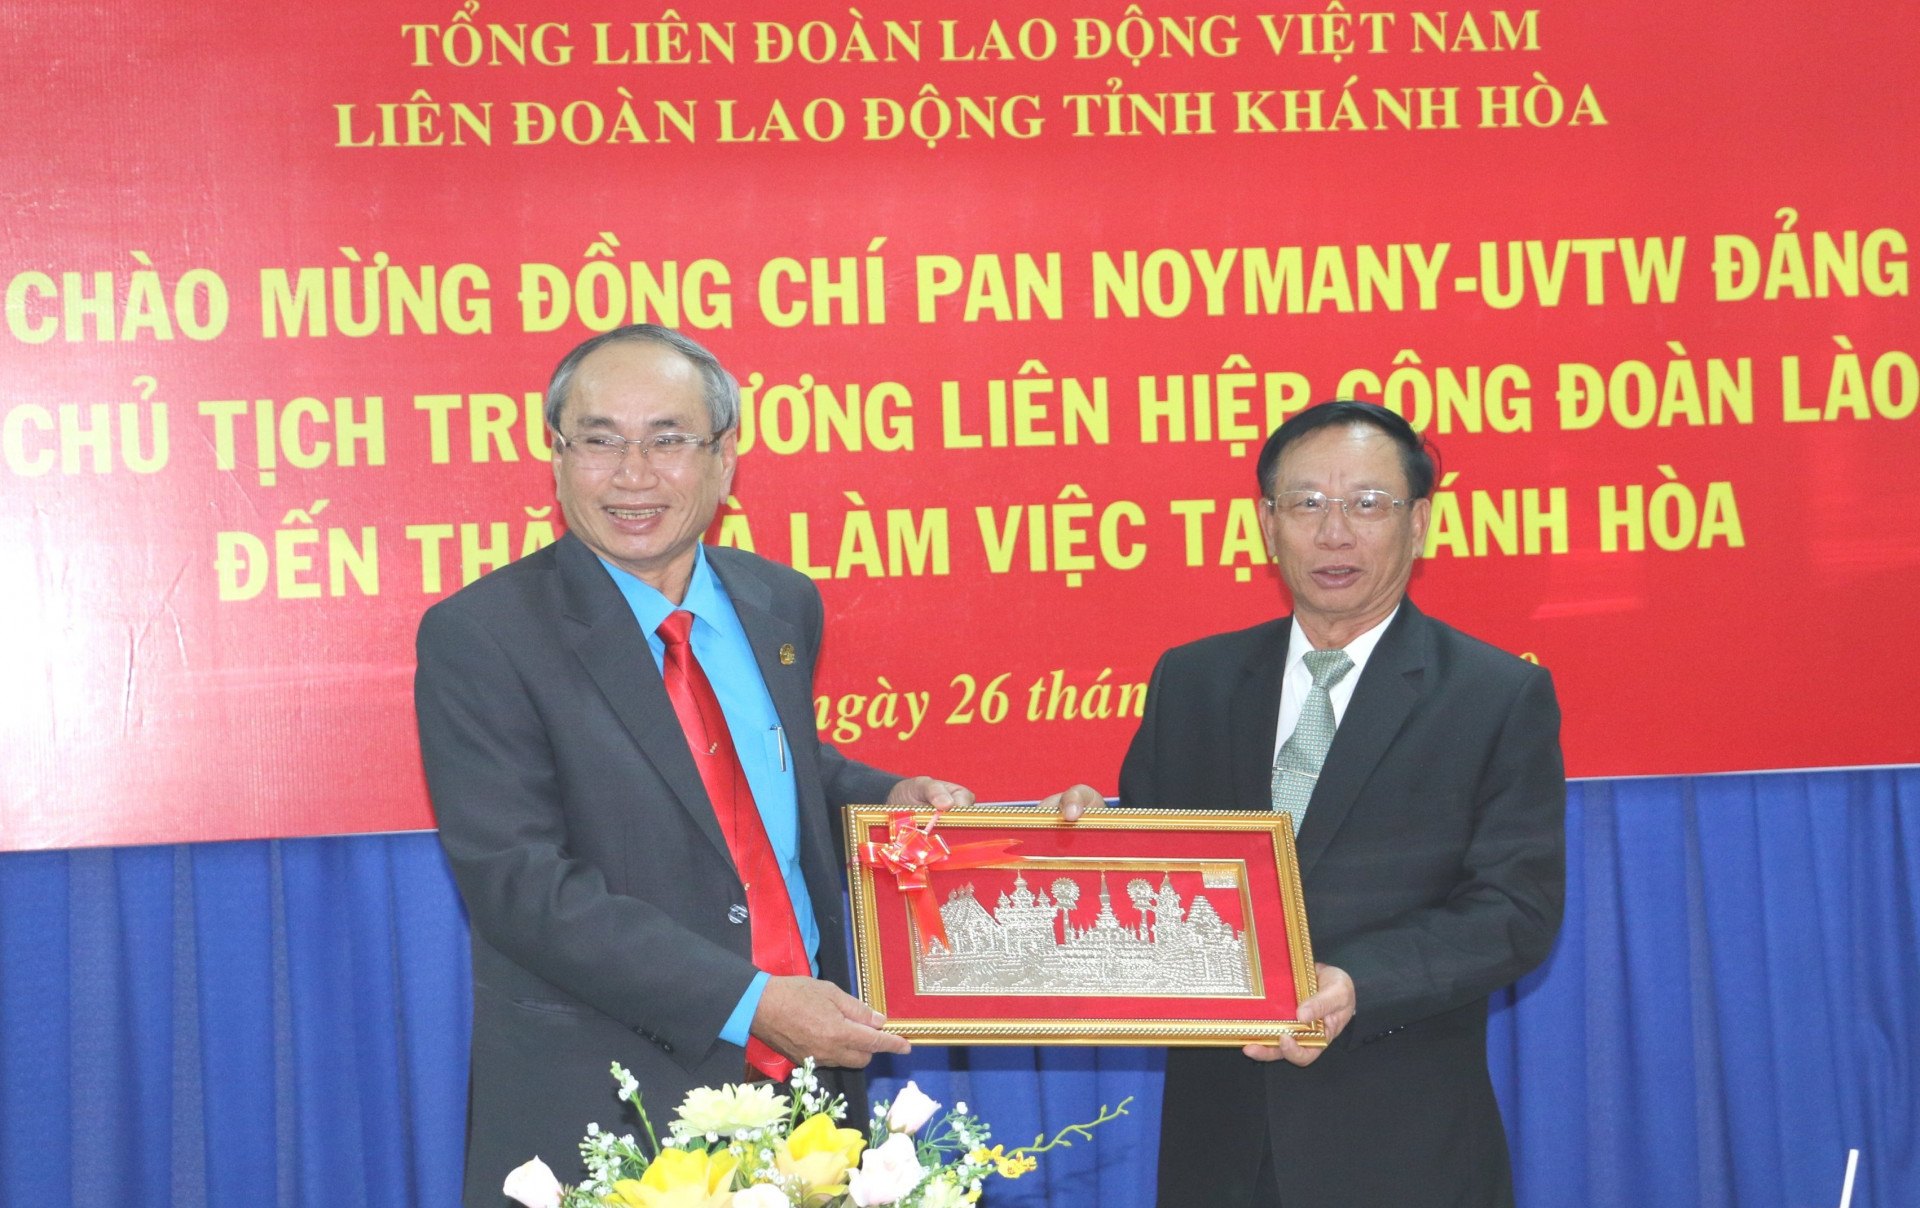 Ông Pan Noymany (bên phải) tặng quà lưu niệm cho đại diện Liên đoàn Lao động tỉnh Khánh Hòa